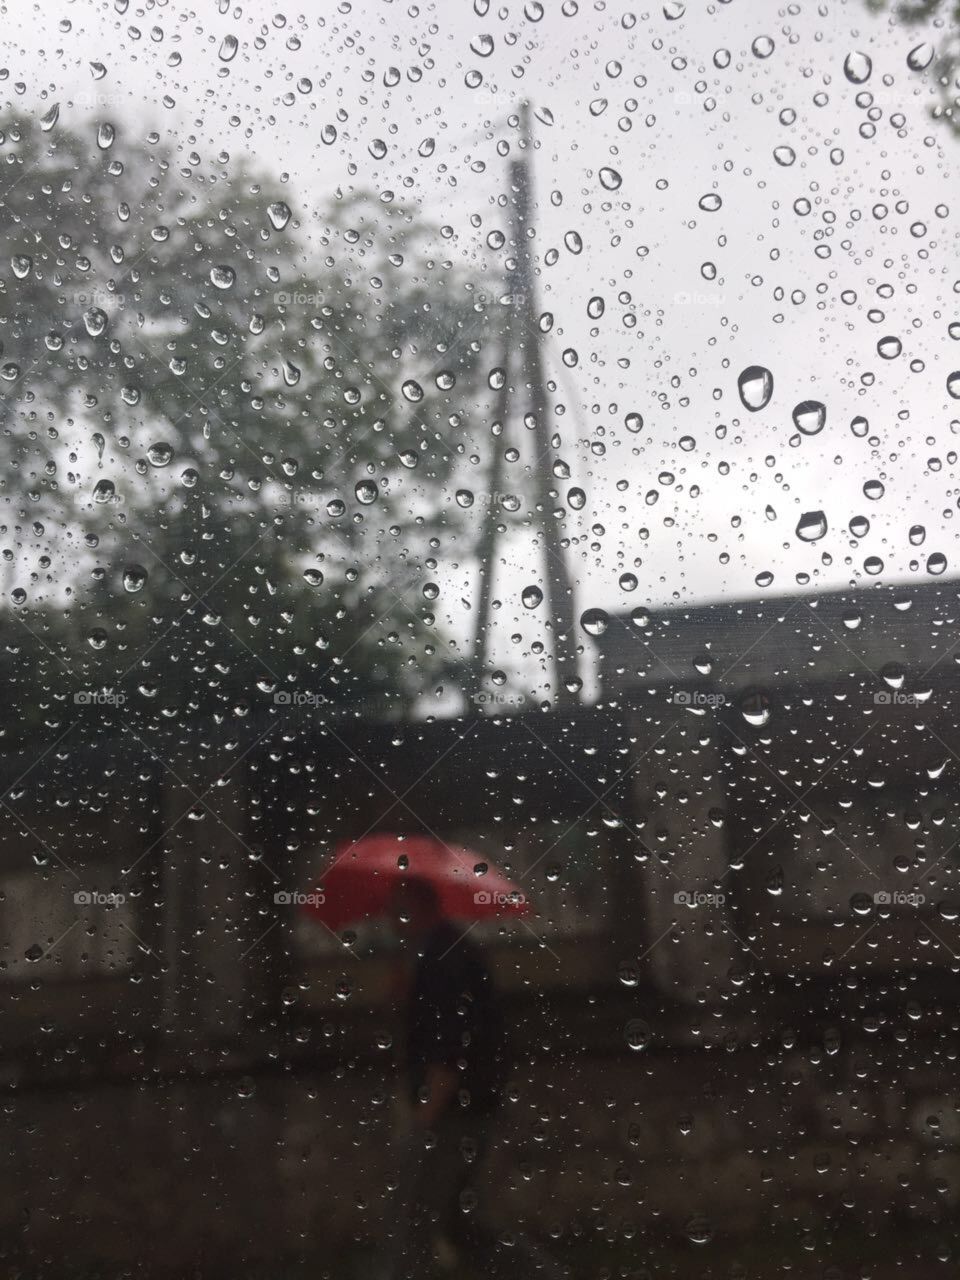 In the rain